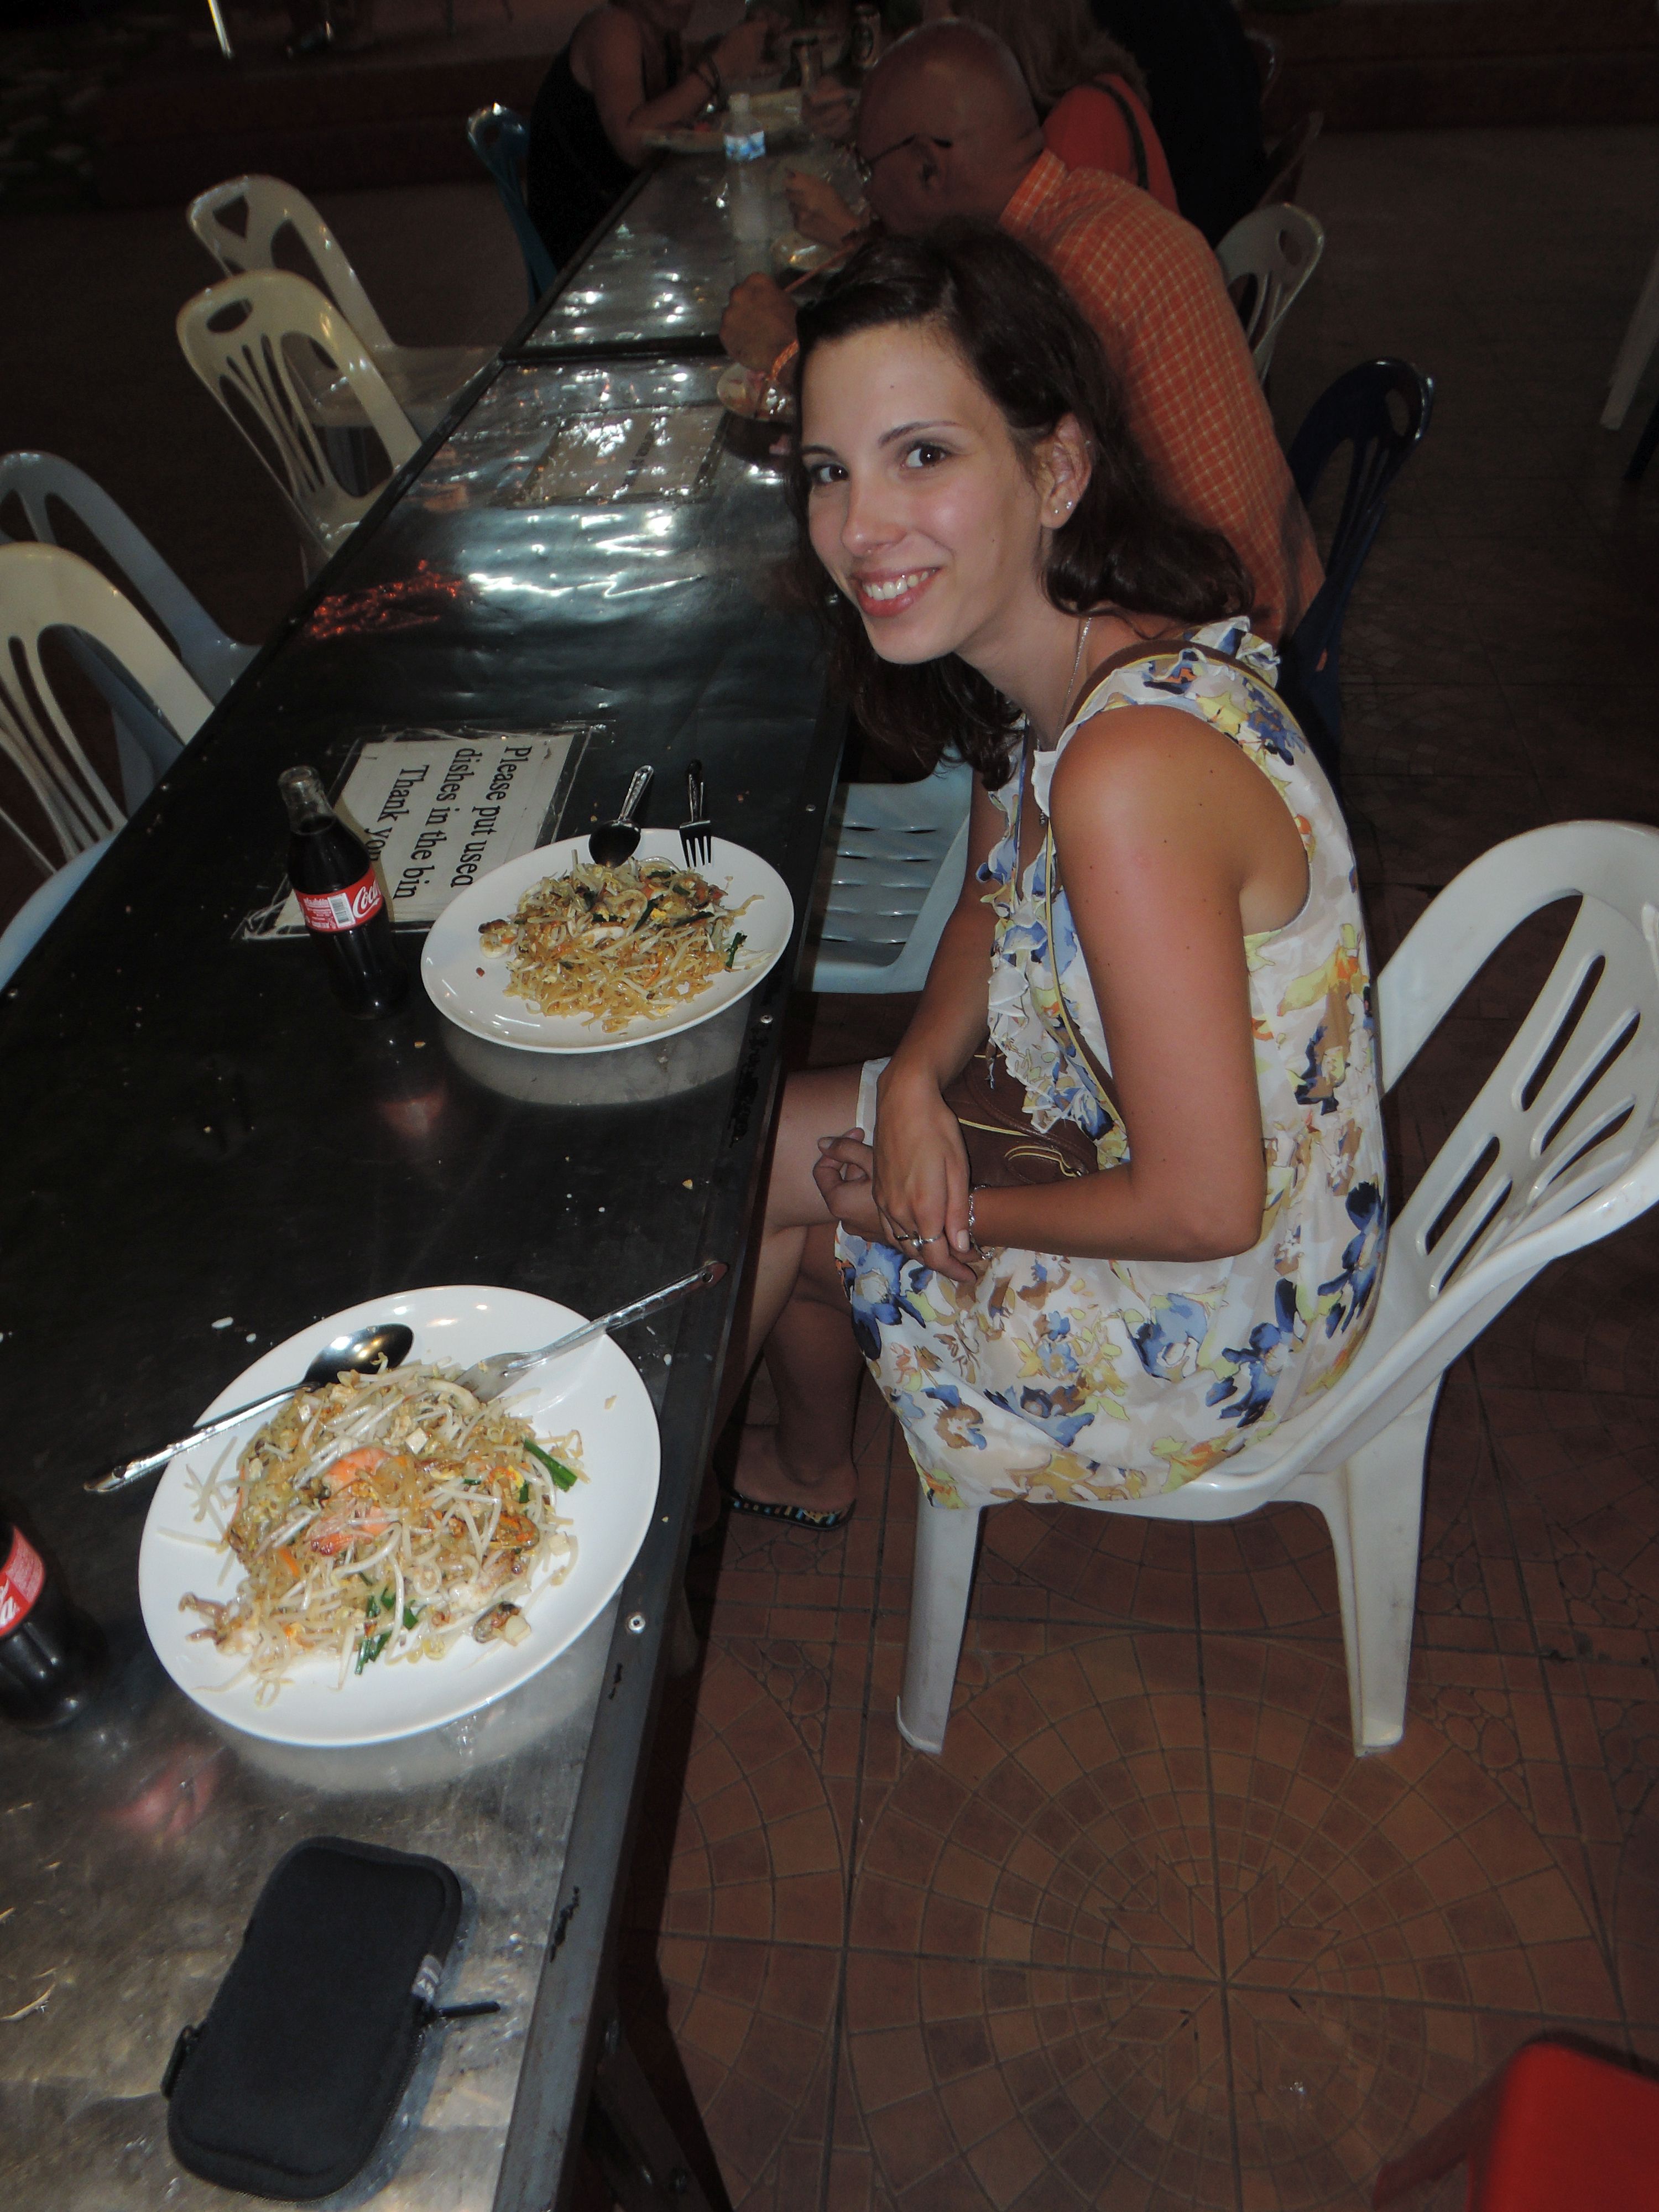 Pad thai - üvegtészta, tojás, csírabab, hús vagy tenger gyümölcsei, fűszerek, pirított dióval meghintve, wokban elkészítve.